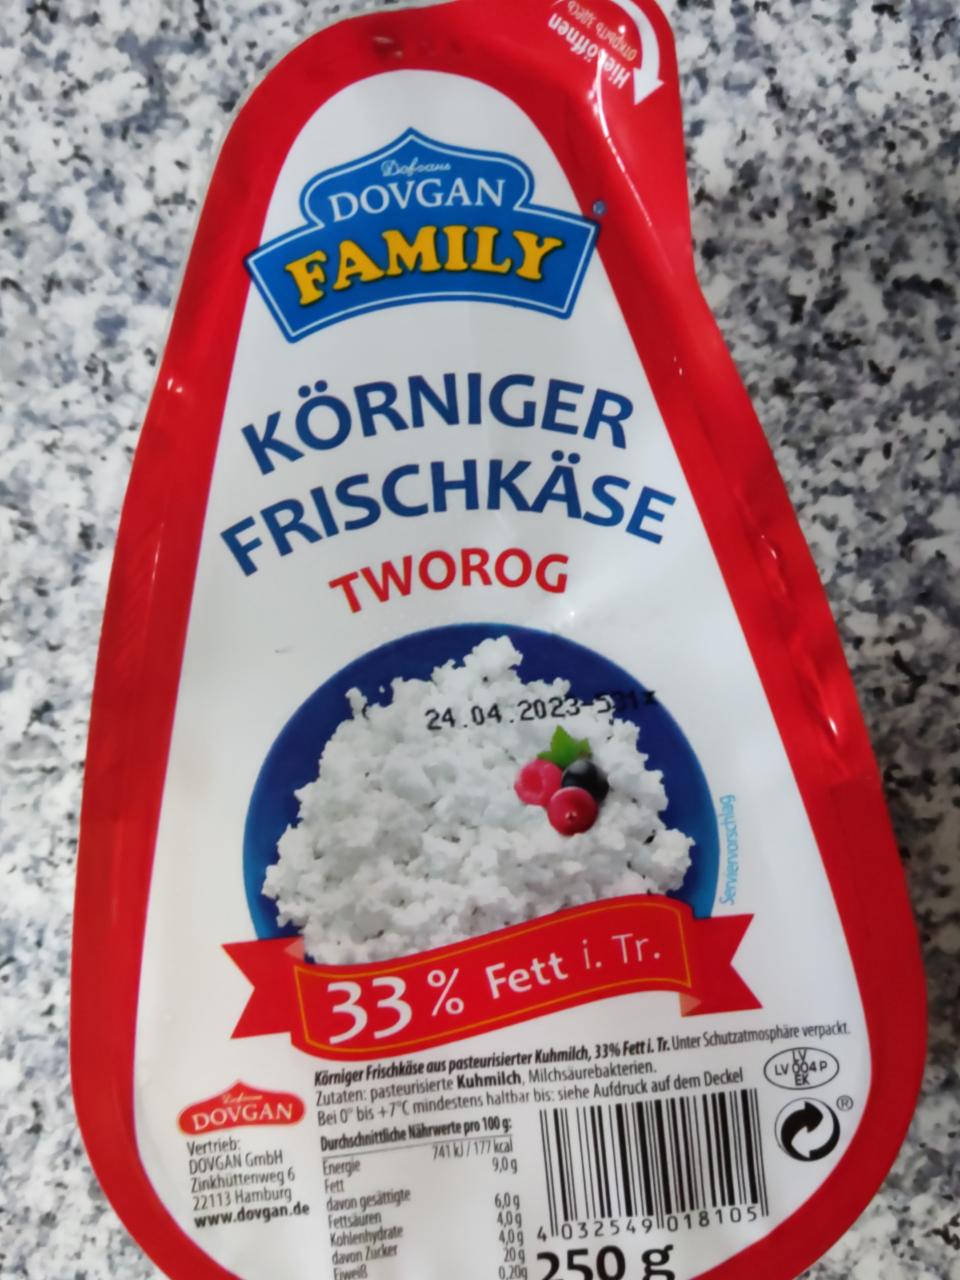 Zdjęcia - Körniger Frischkäse 33% Fett Dovgan Family